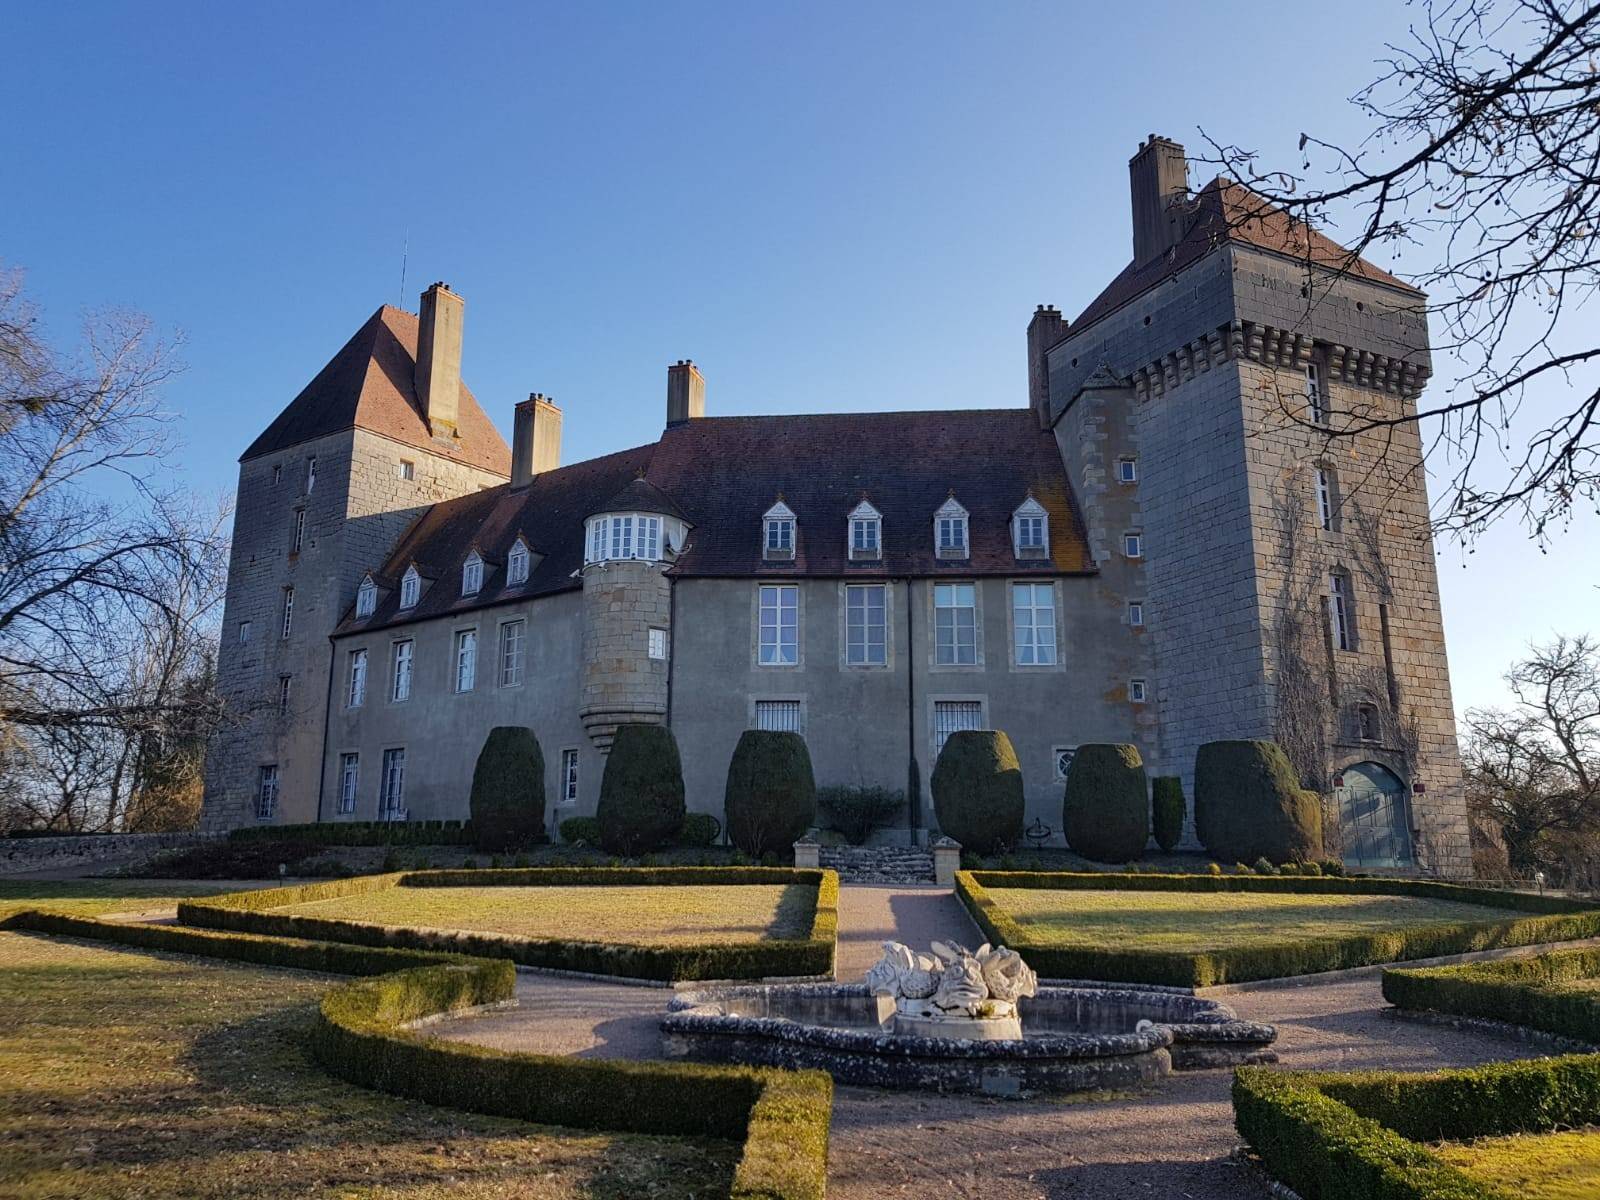 Francia in vendita Castello d'Epinac dipartimento della Saône-et-Loire nella regione della Borgogna-Franca Contea. La prestigiosa proprietà immobiliare di 1.500 mq è composta da: castello, parco, 